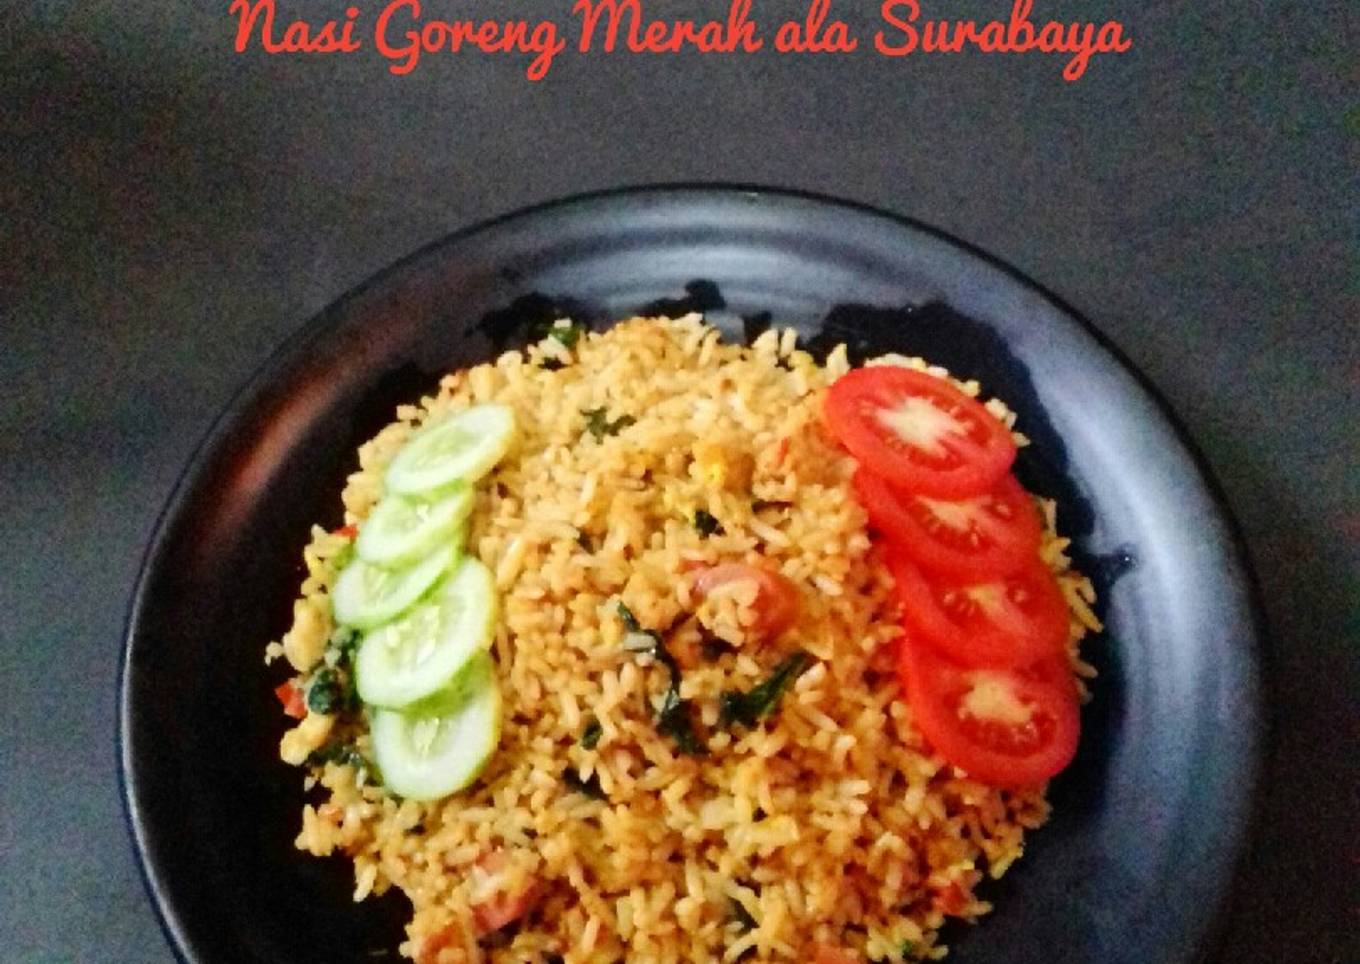 Nasi Goreng Merah ala Surabaya